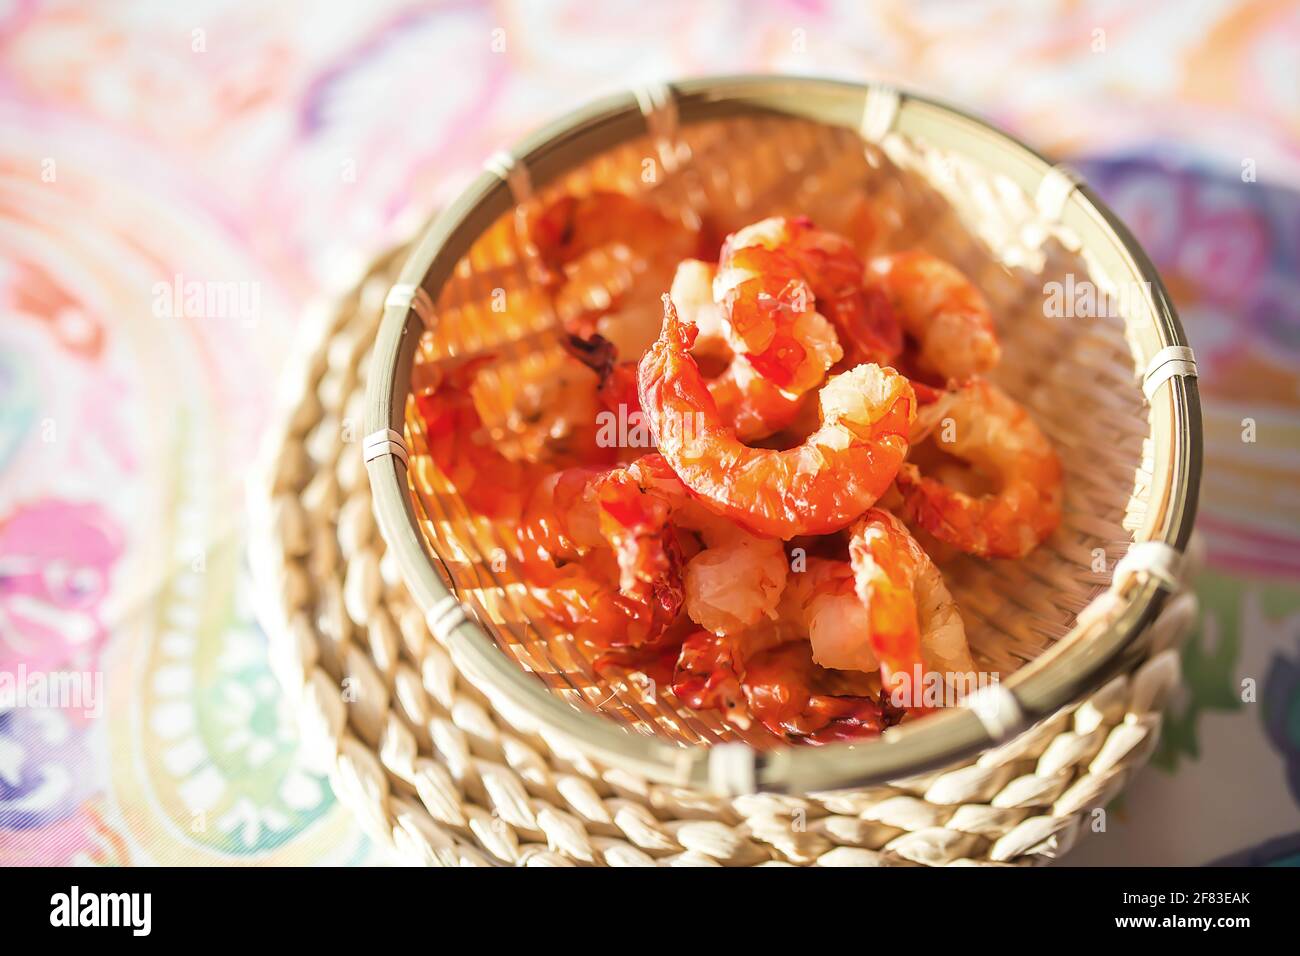 Crevettes séchées de grande taille (cuisine vietnamienne traditionnelle) Banque D'Images